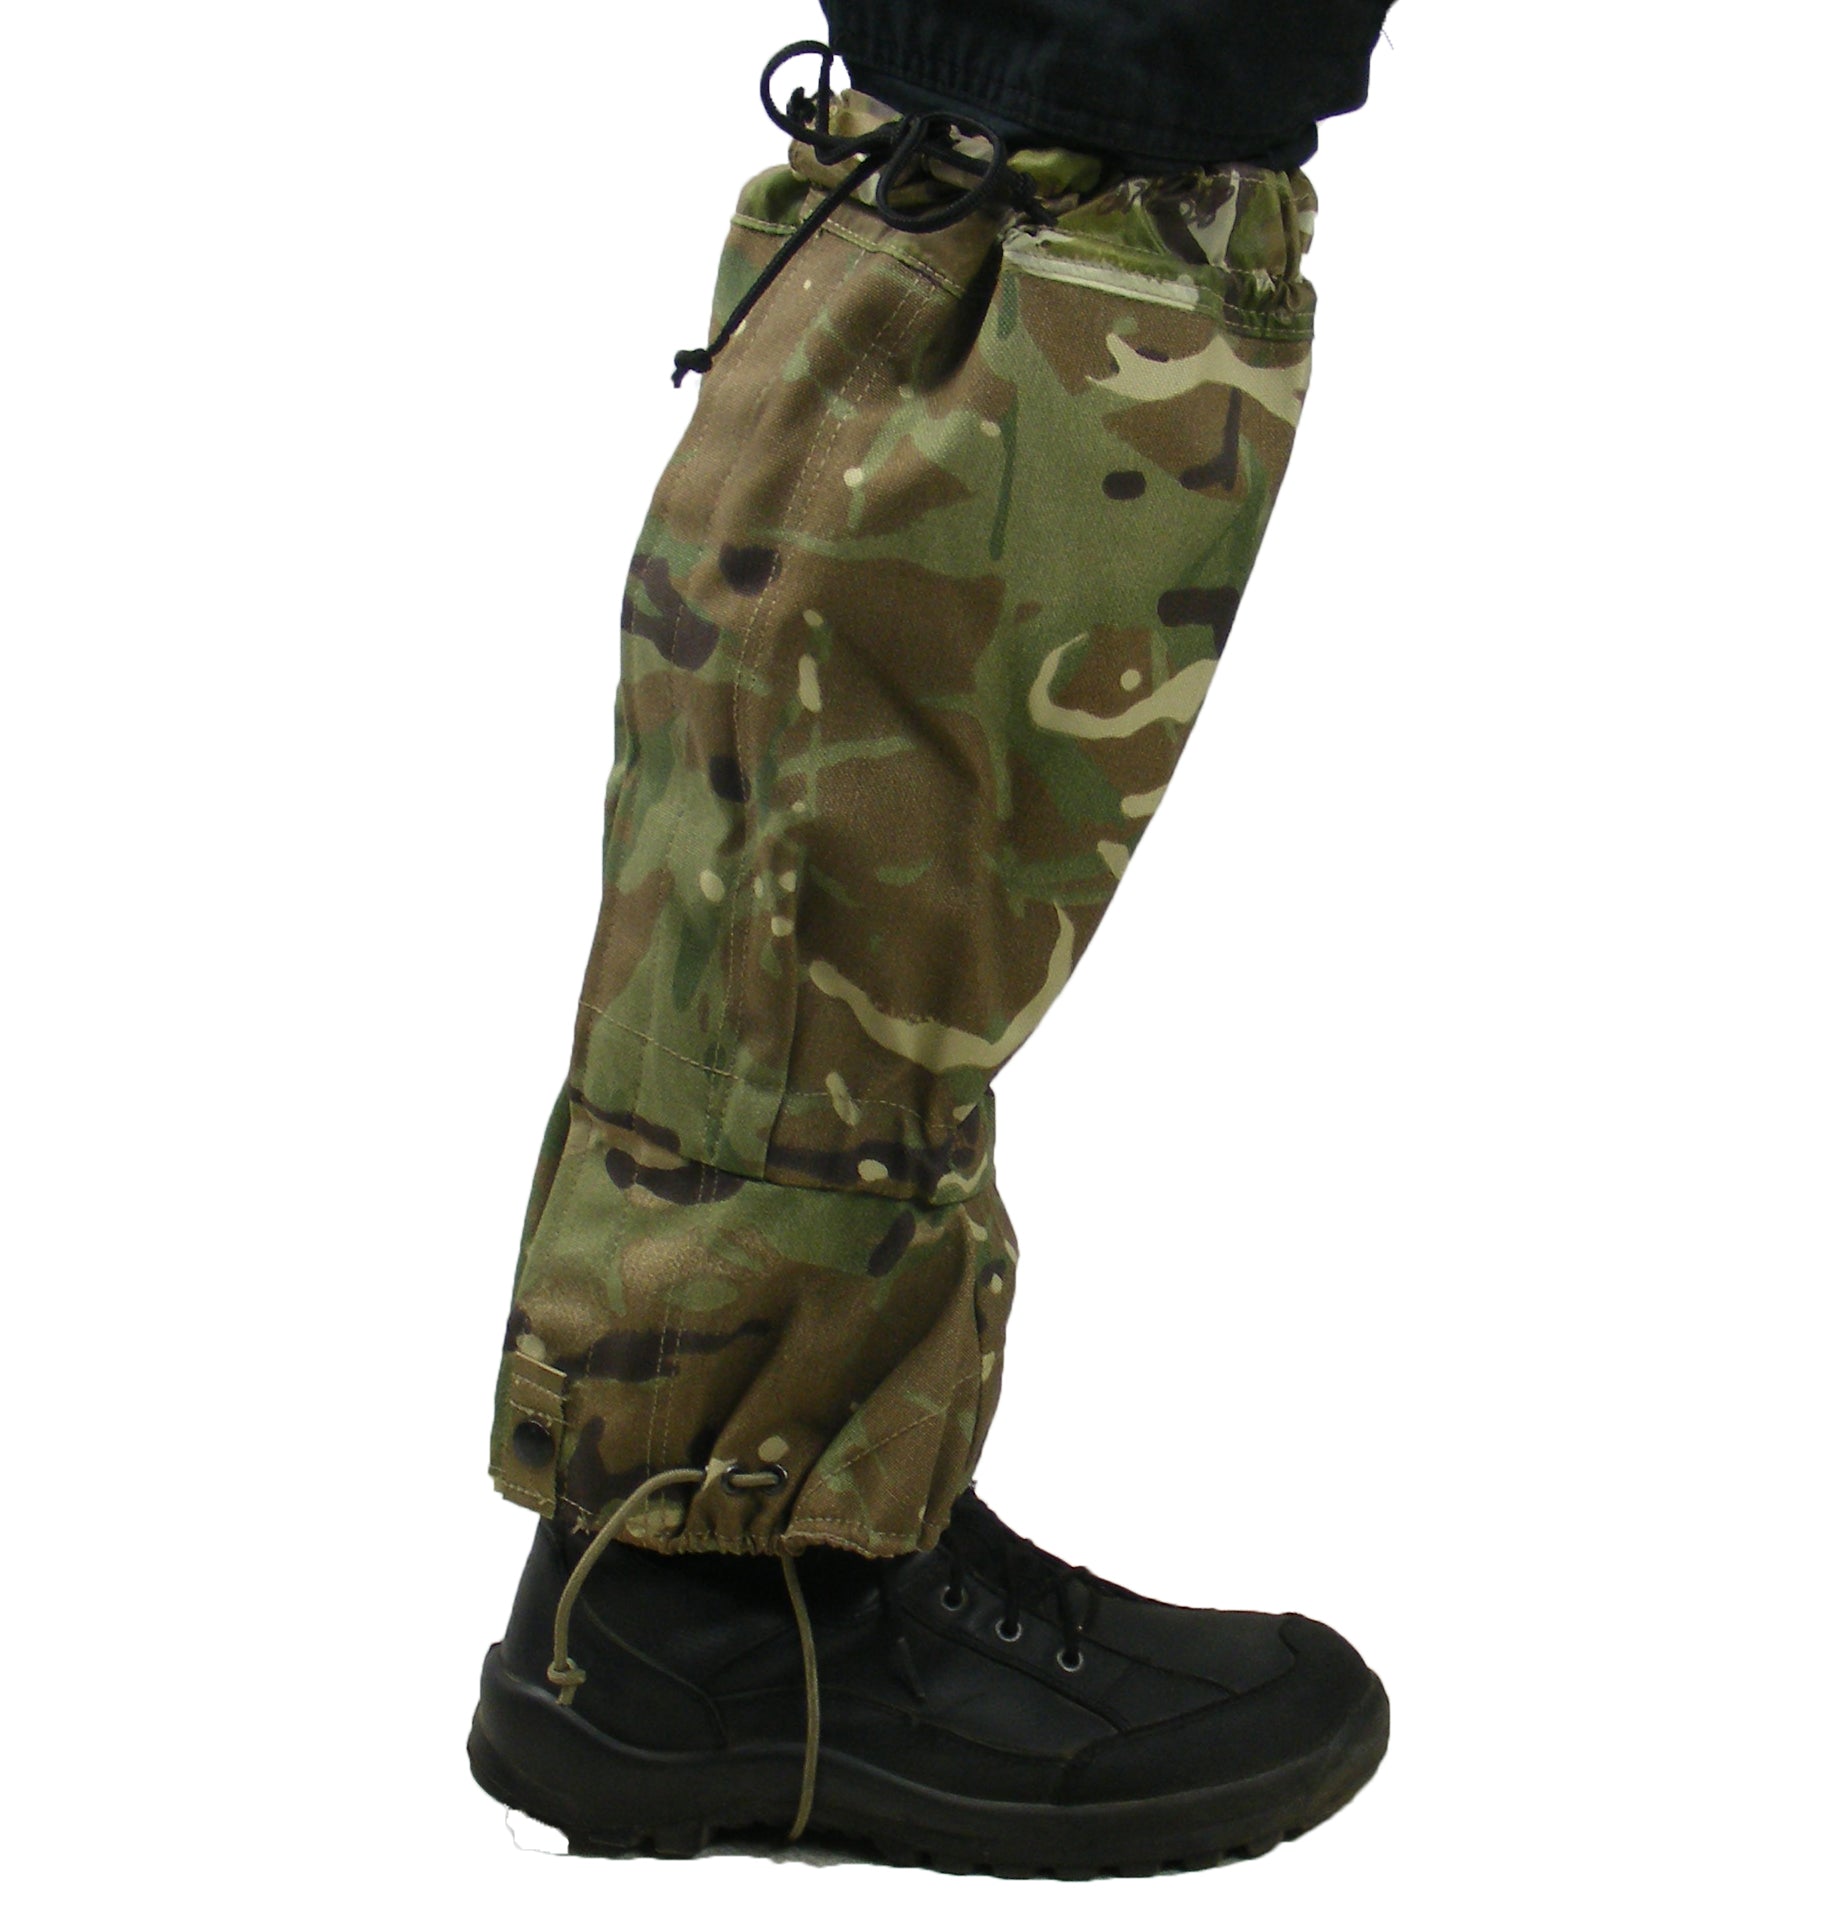 British Army - Gore-Tex Gaiters - MTP - one pair